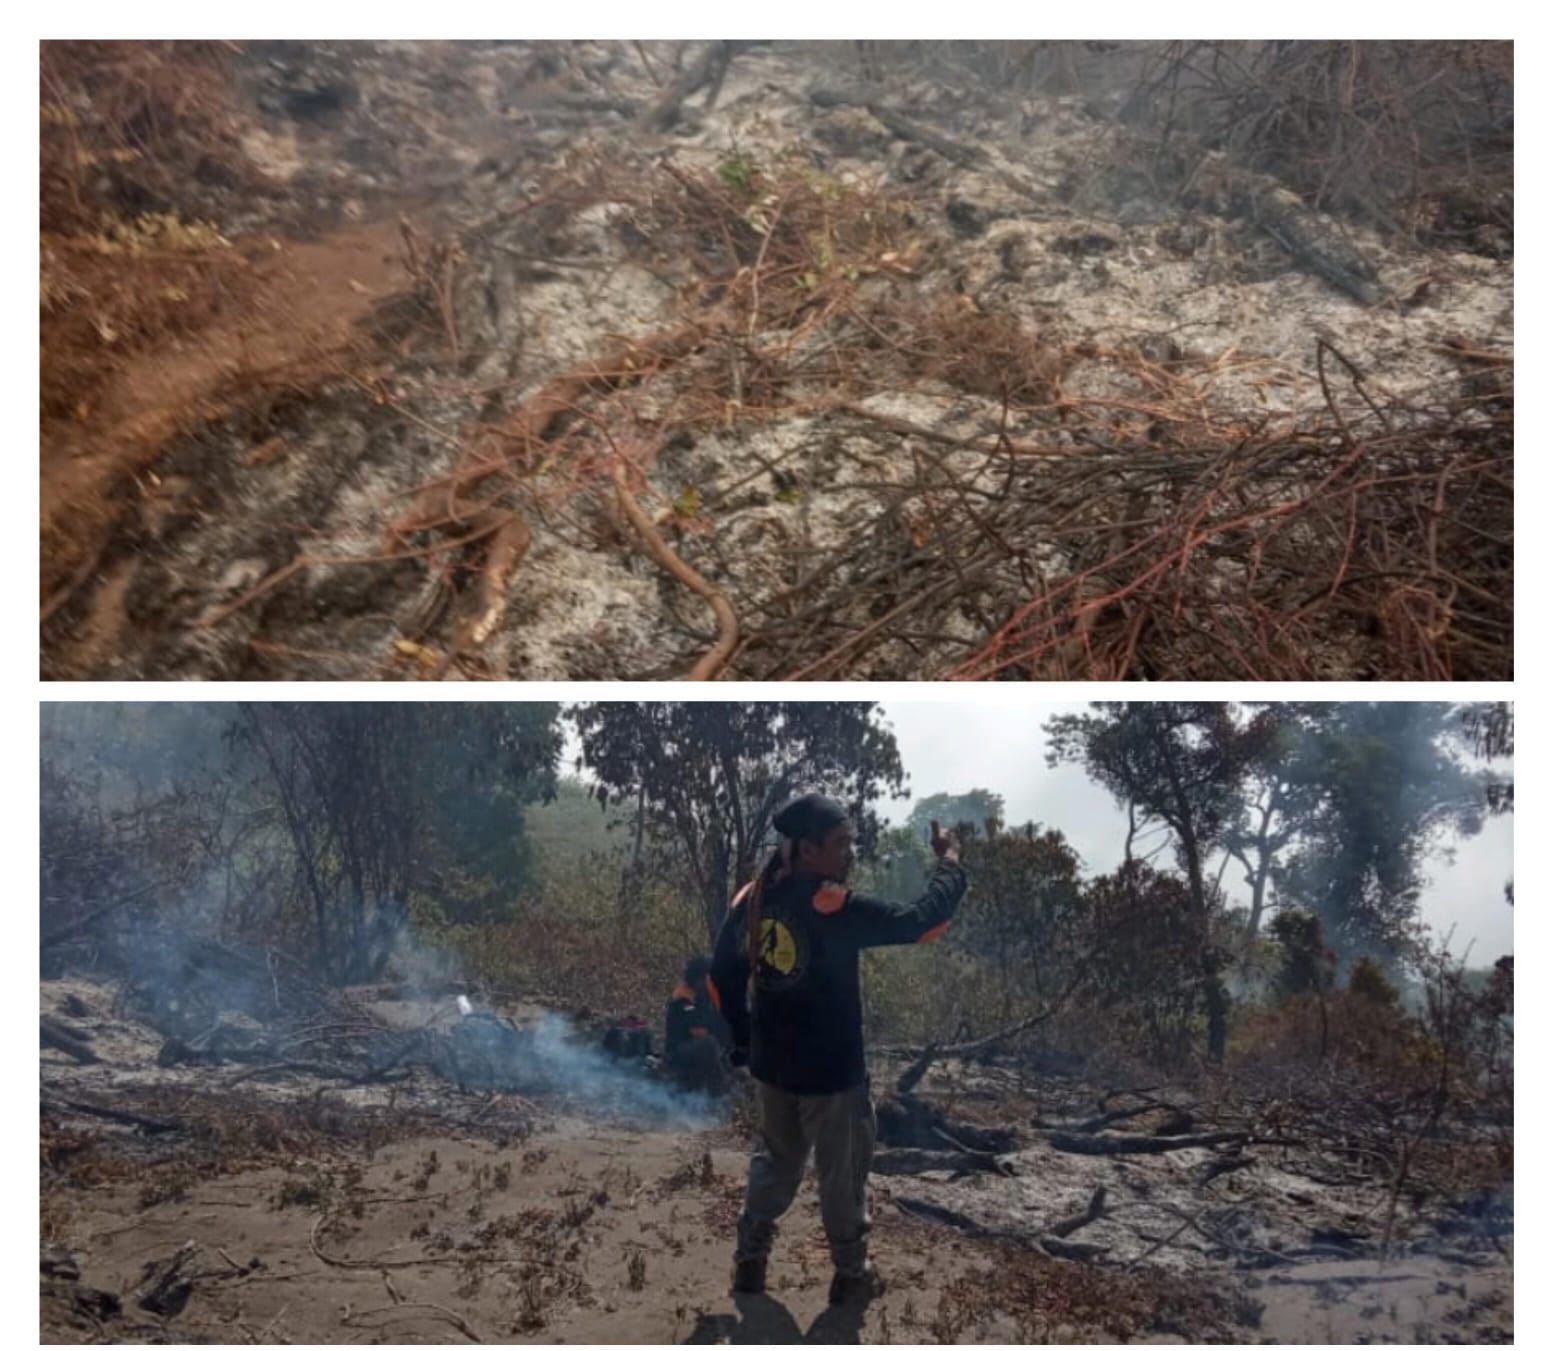 Hutan di Gunung Slamet Kabupaten Tegal Kebakaran, 42 Orang Dikerahkan untuk Padamkan Api 